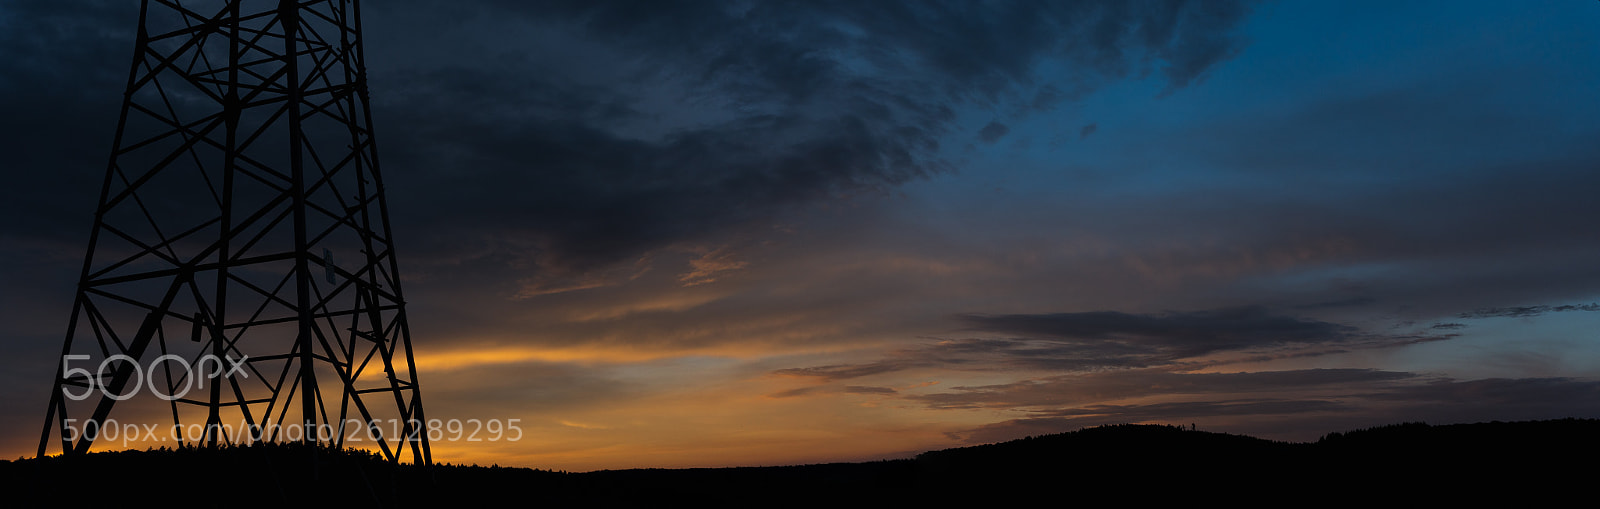 Sony a6300 sample photo. Sunset near taunusstein-hahn photography